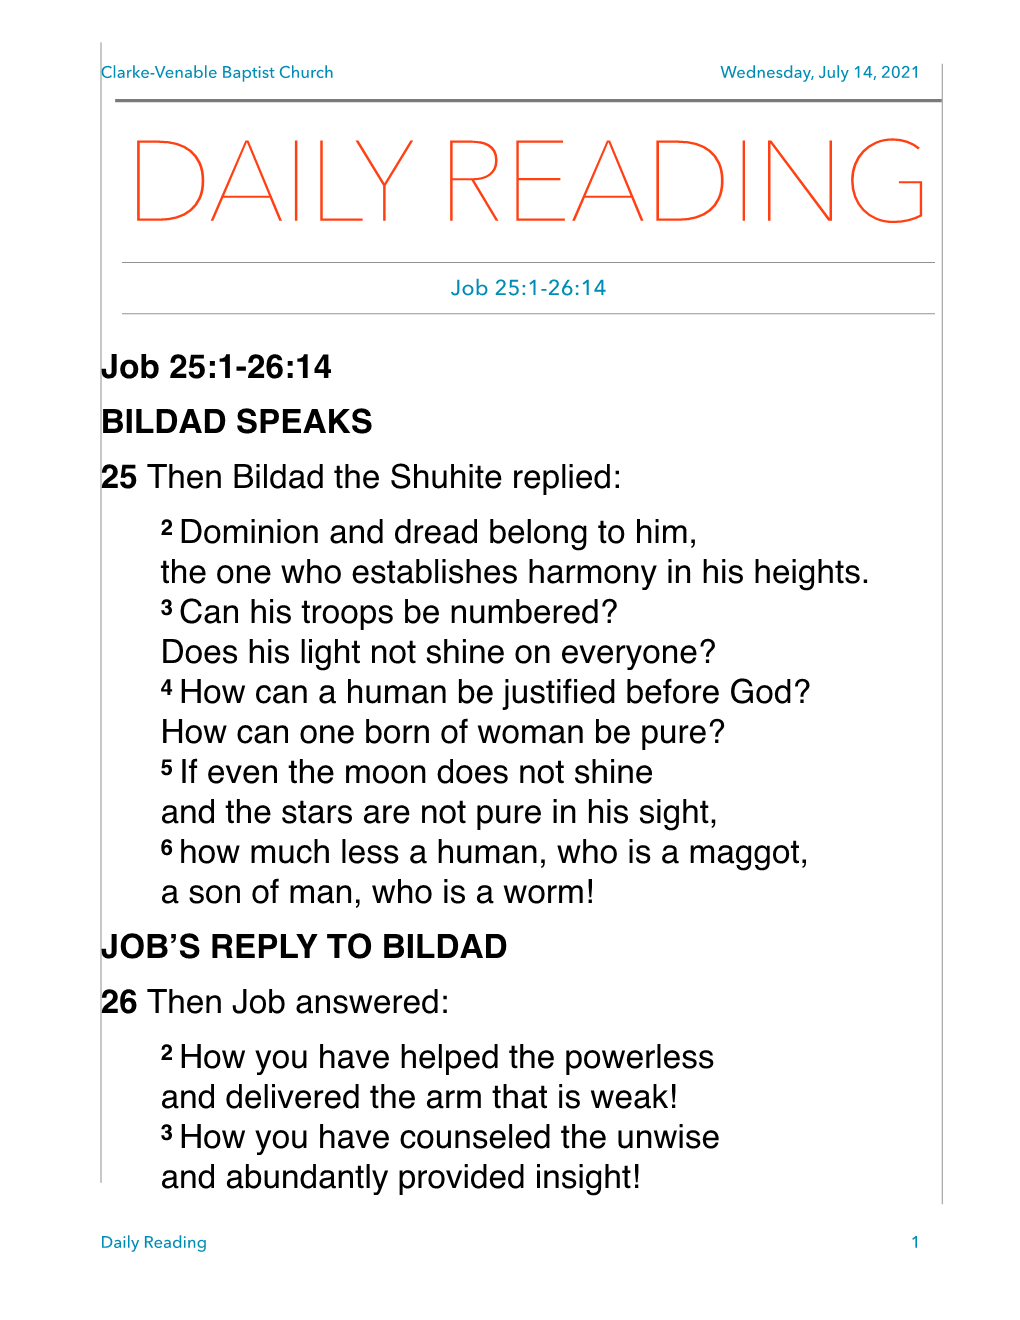 July 14, 2021 DAILY READING Job 25:1-26:14